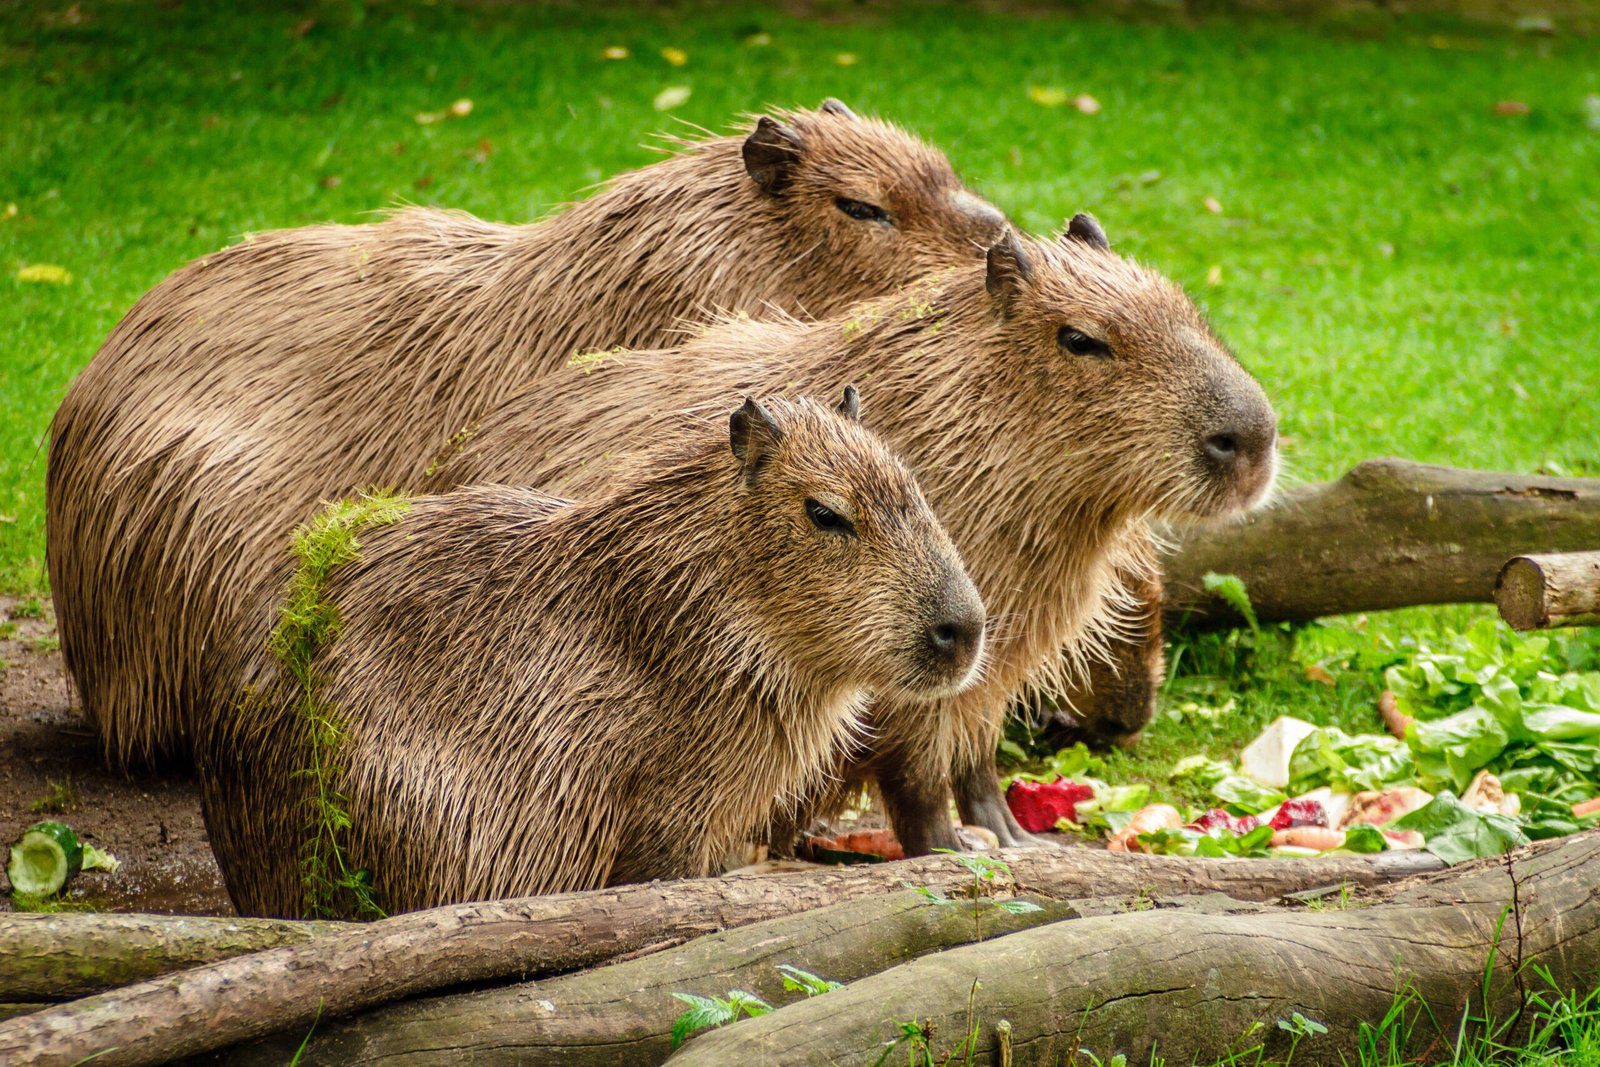 Benefits of Keeping a Capybara as a Pet